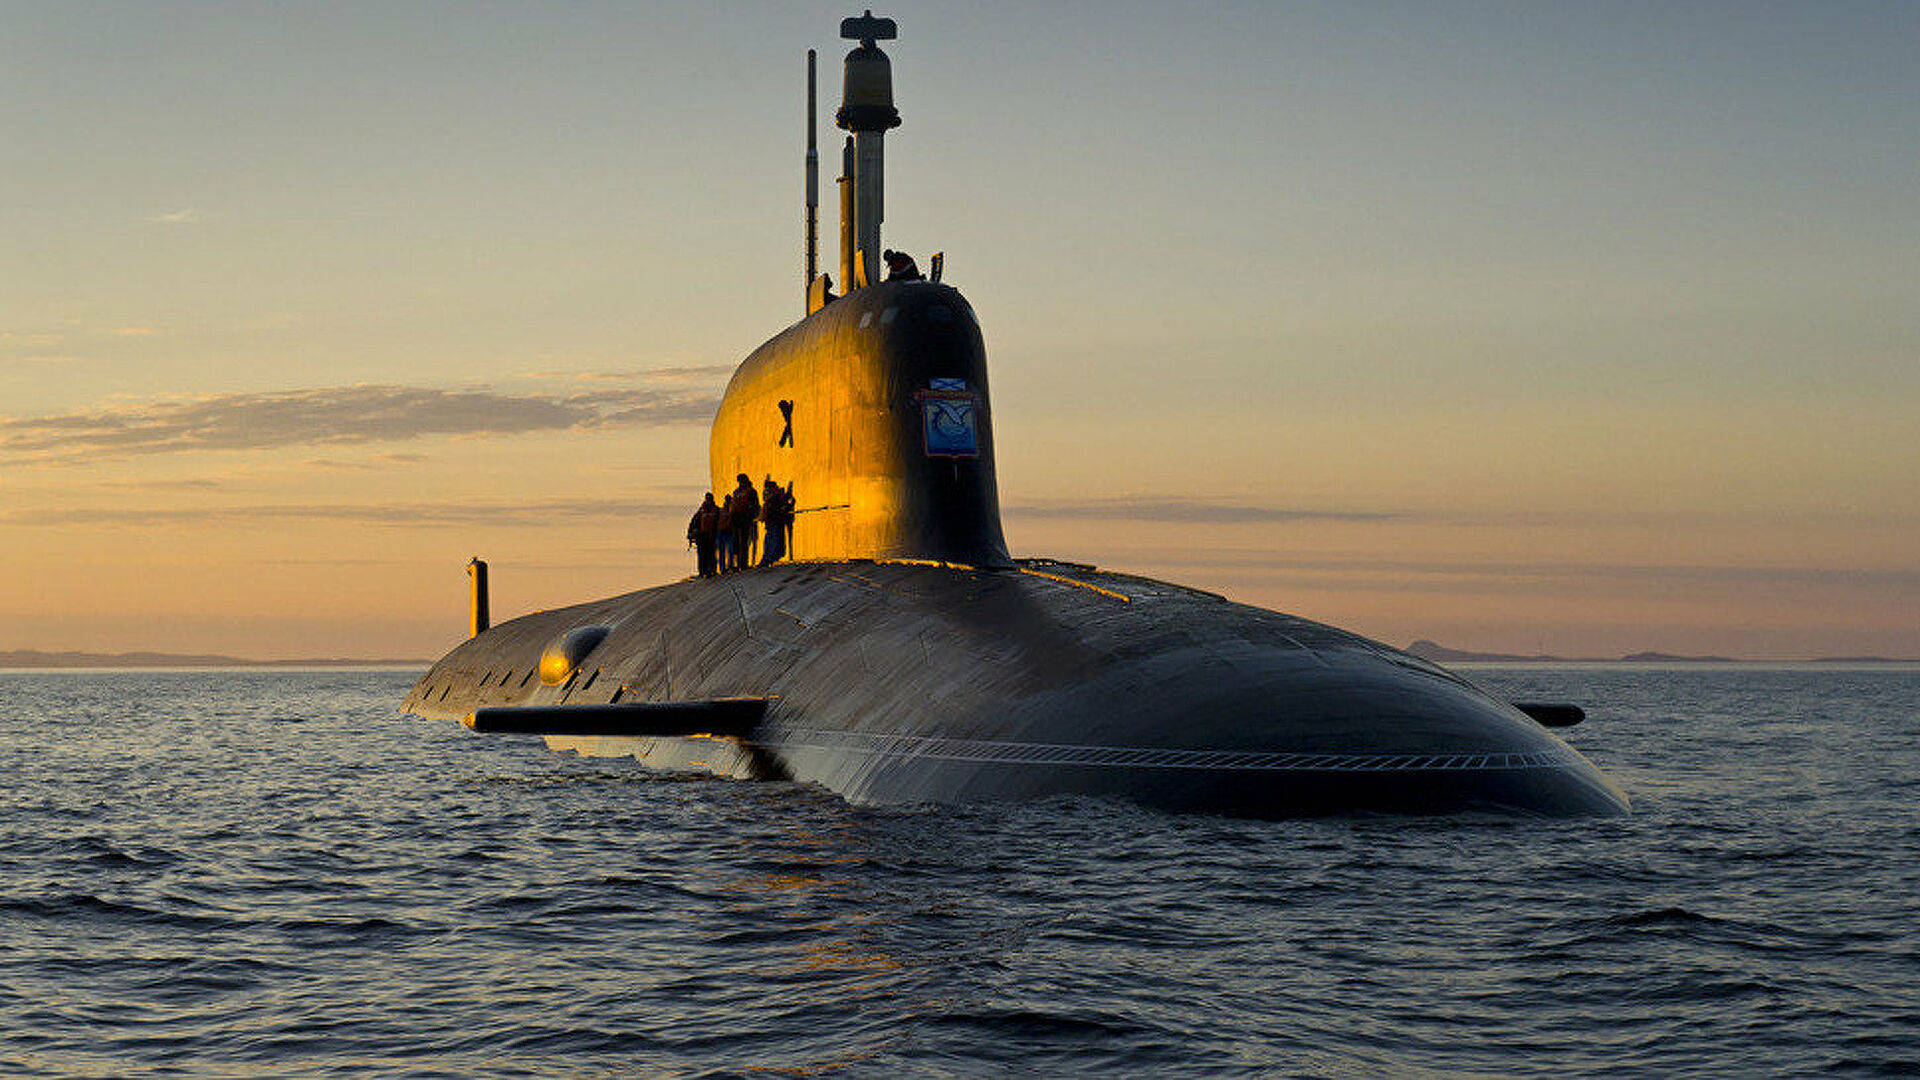 原创俄加快新型核潜艇服役,整体性能大幅增长,全面提升海军战力!